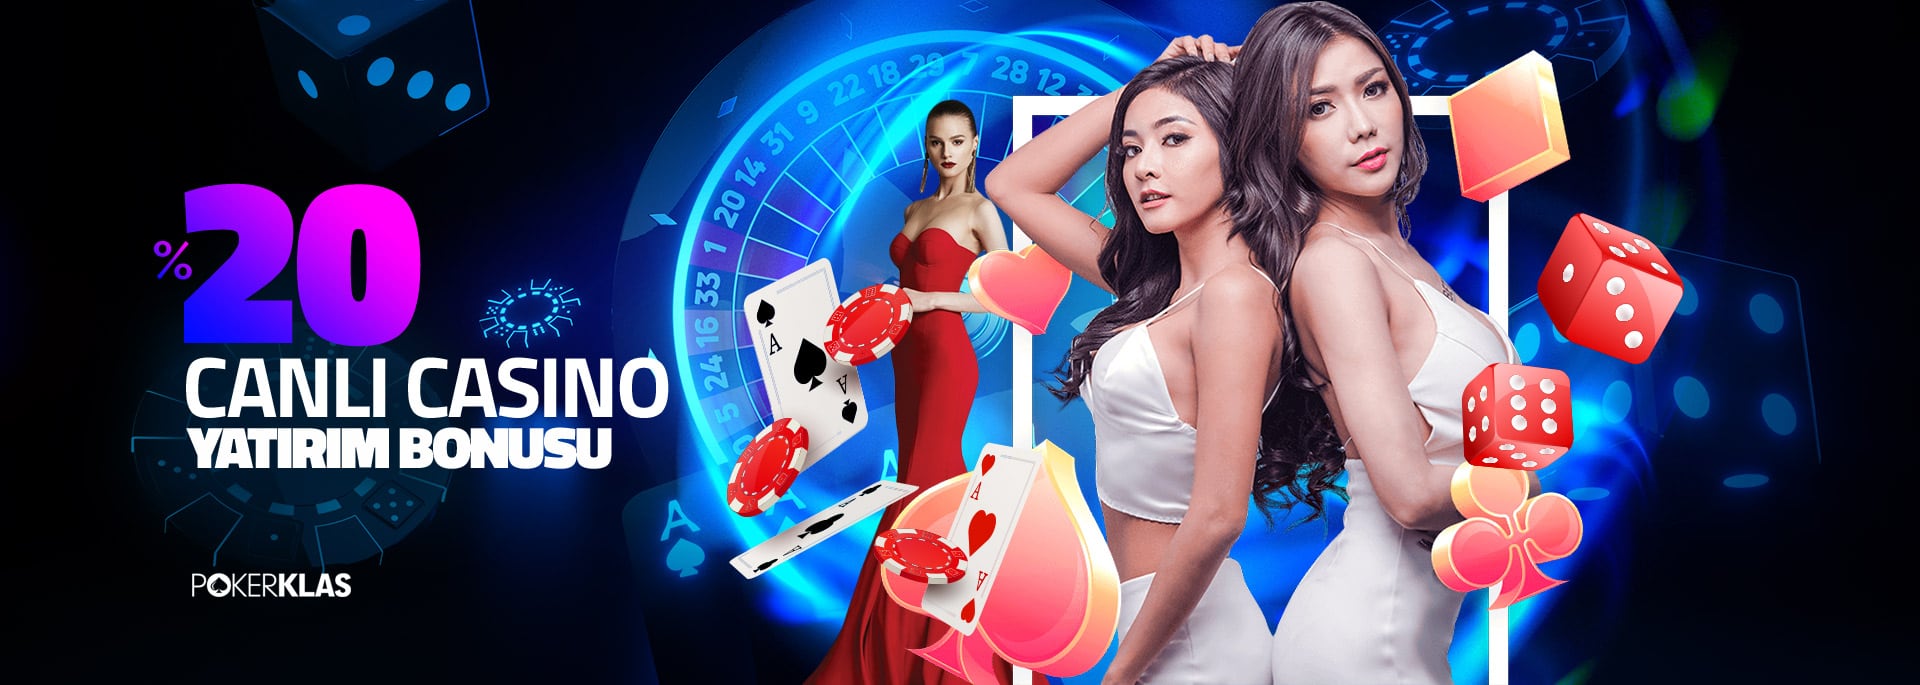 Pokerklas %20 Canlı Casino Yatırım Bonusu